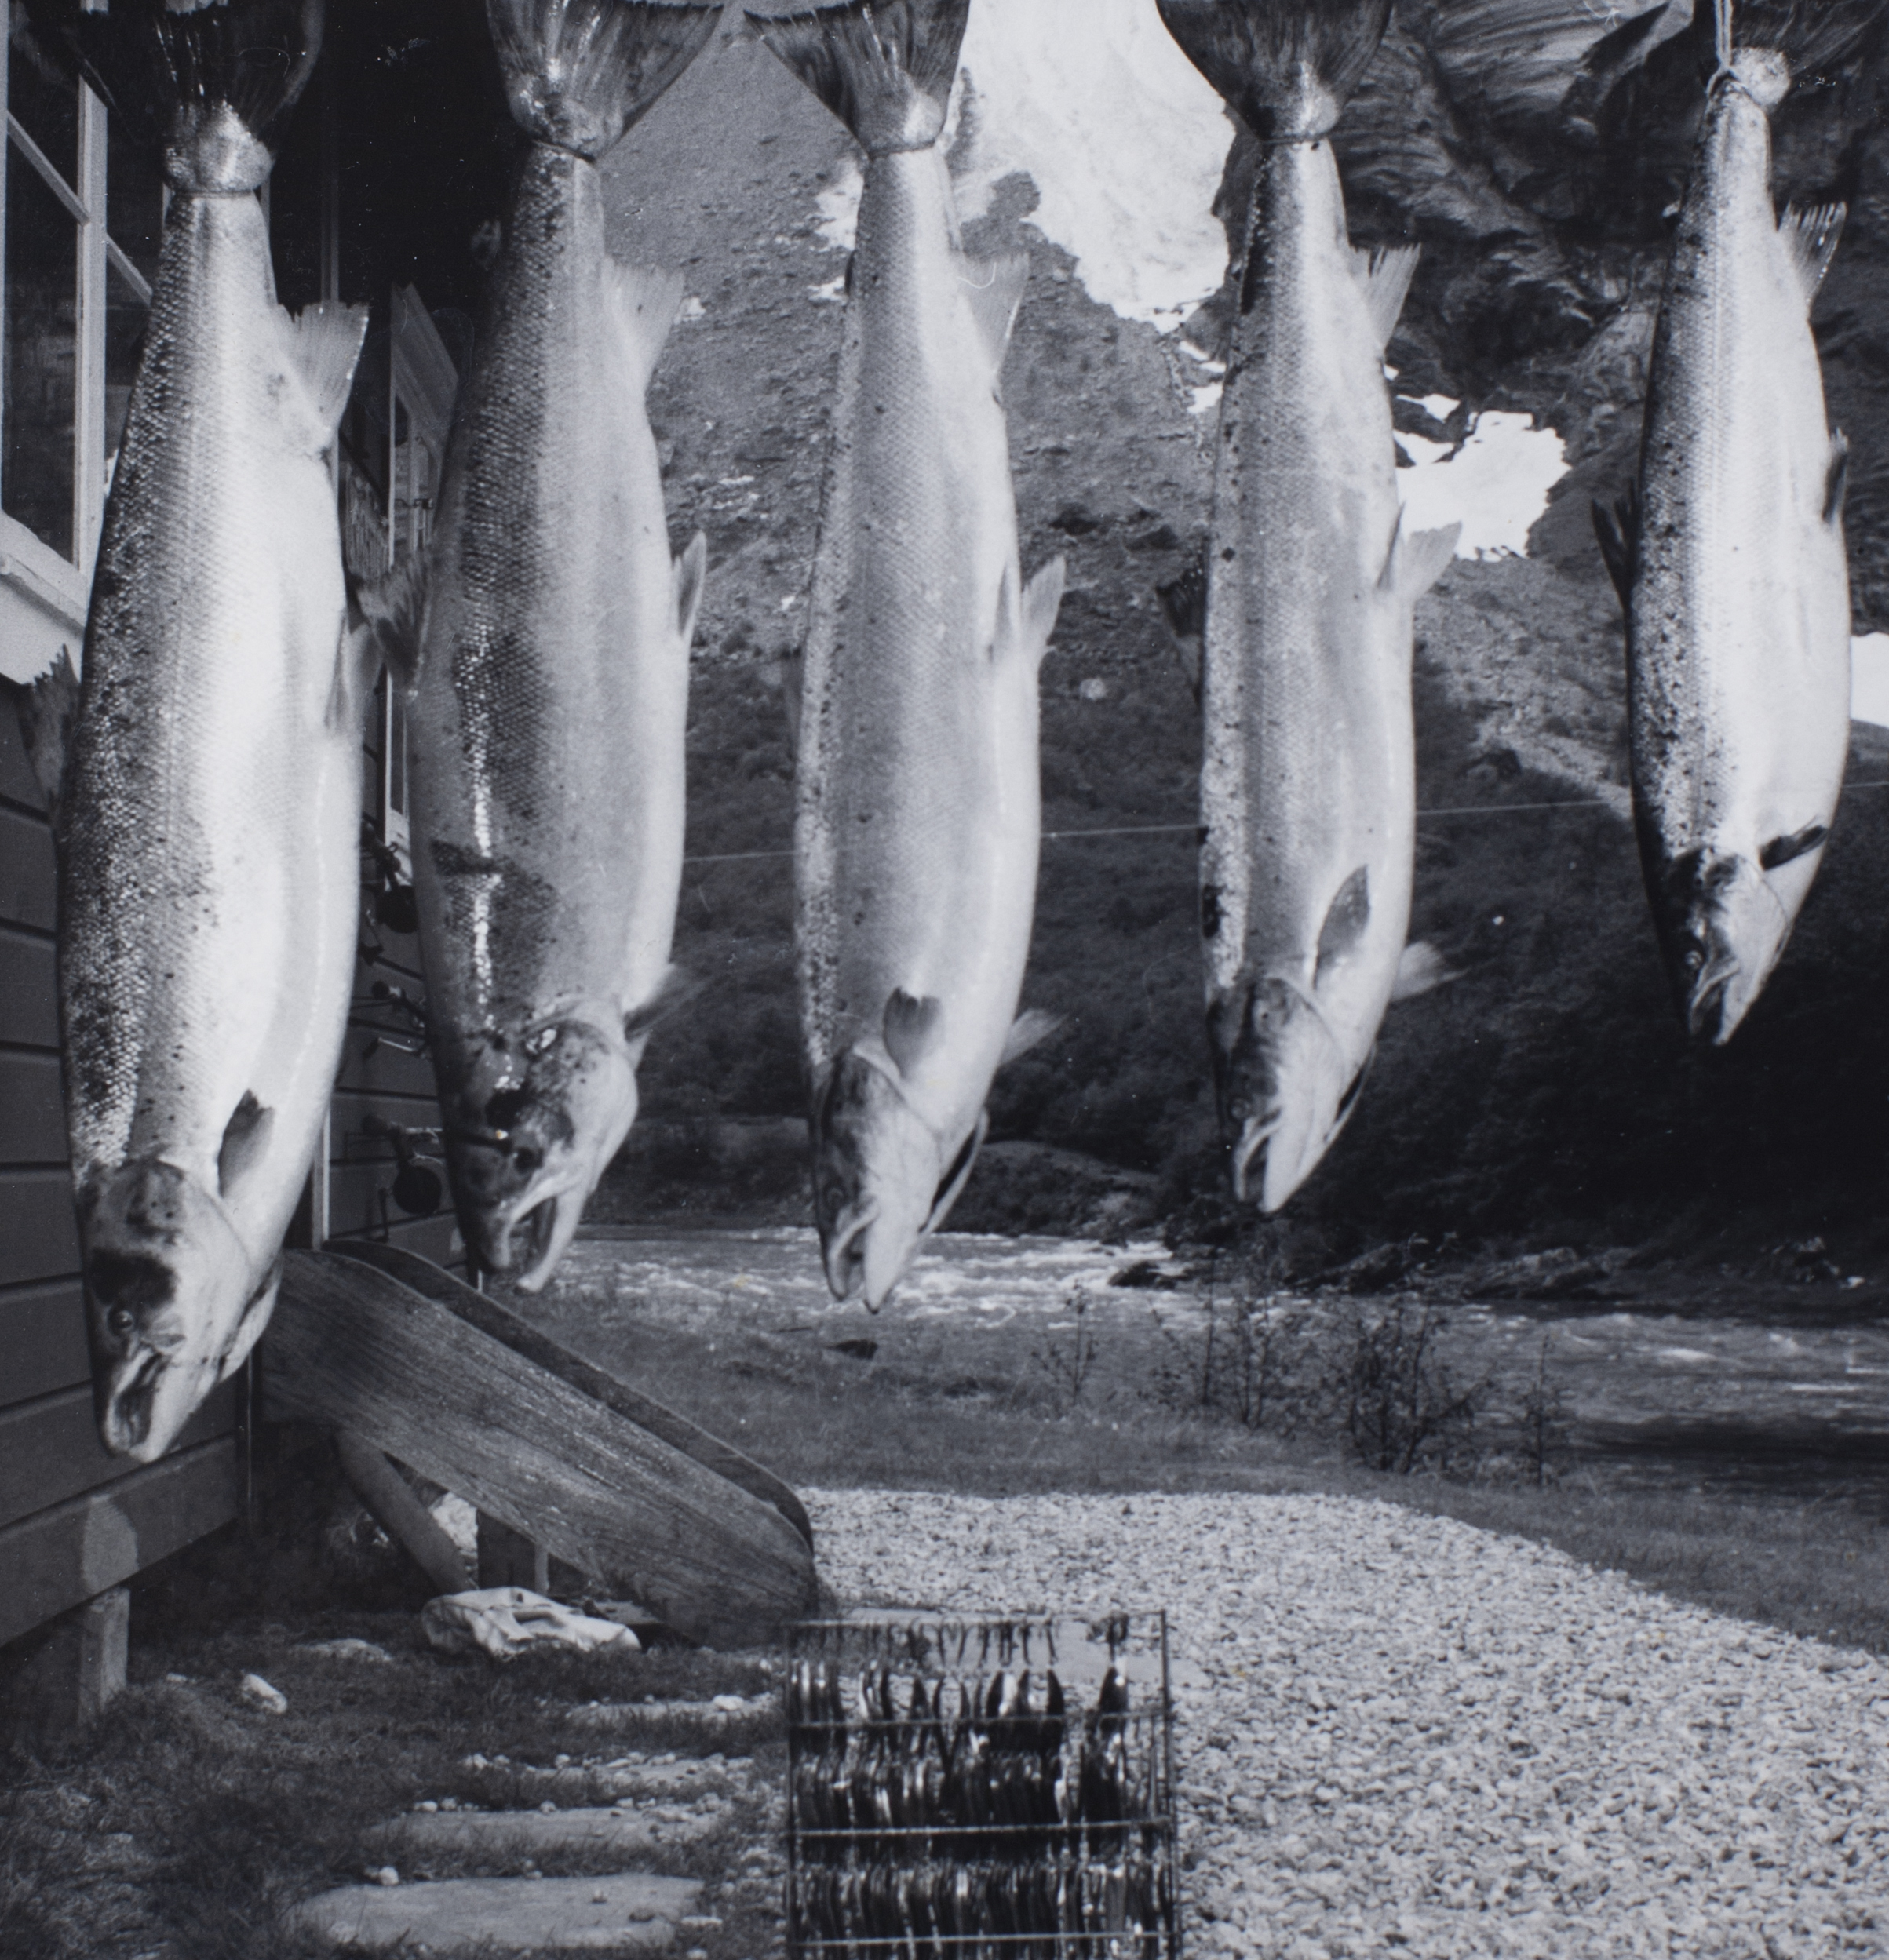 Lakseeventyr i Rauma Elv på 1900-tallet